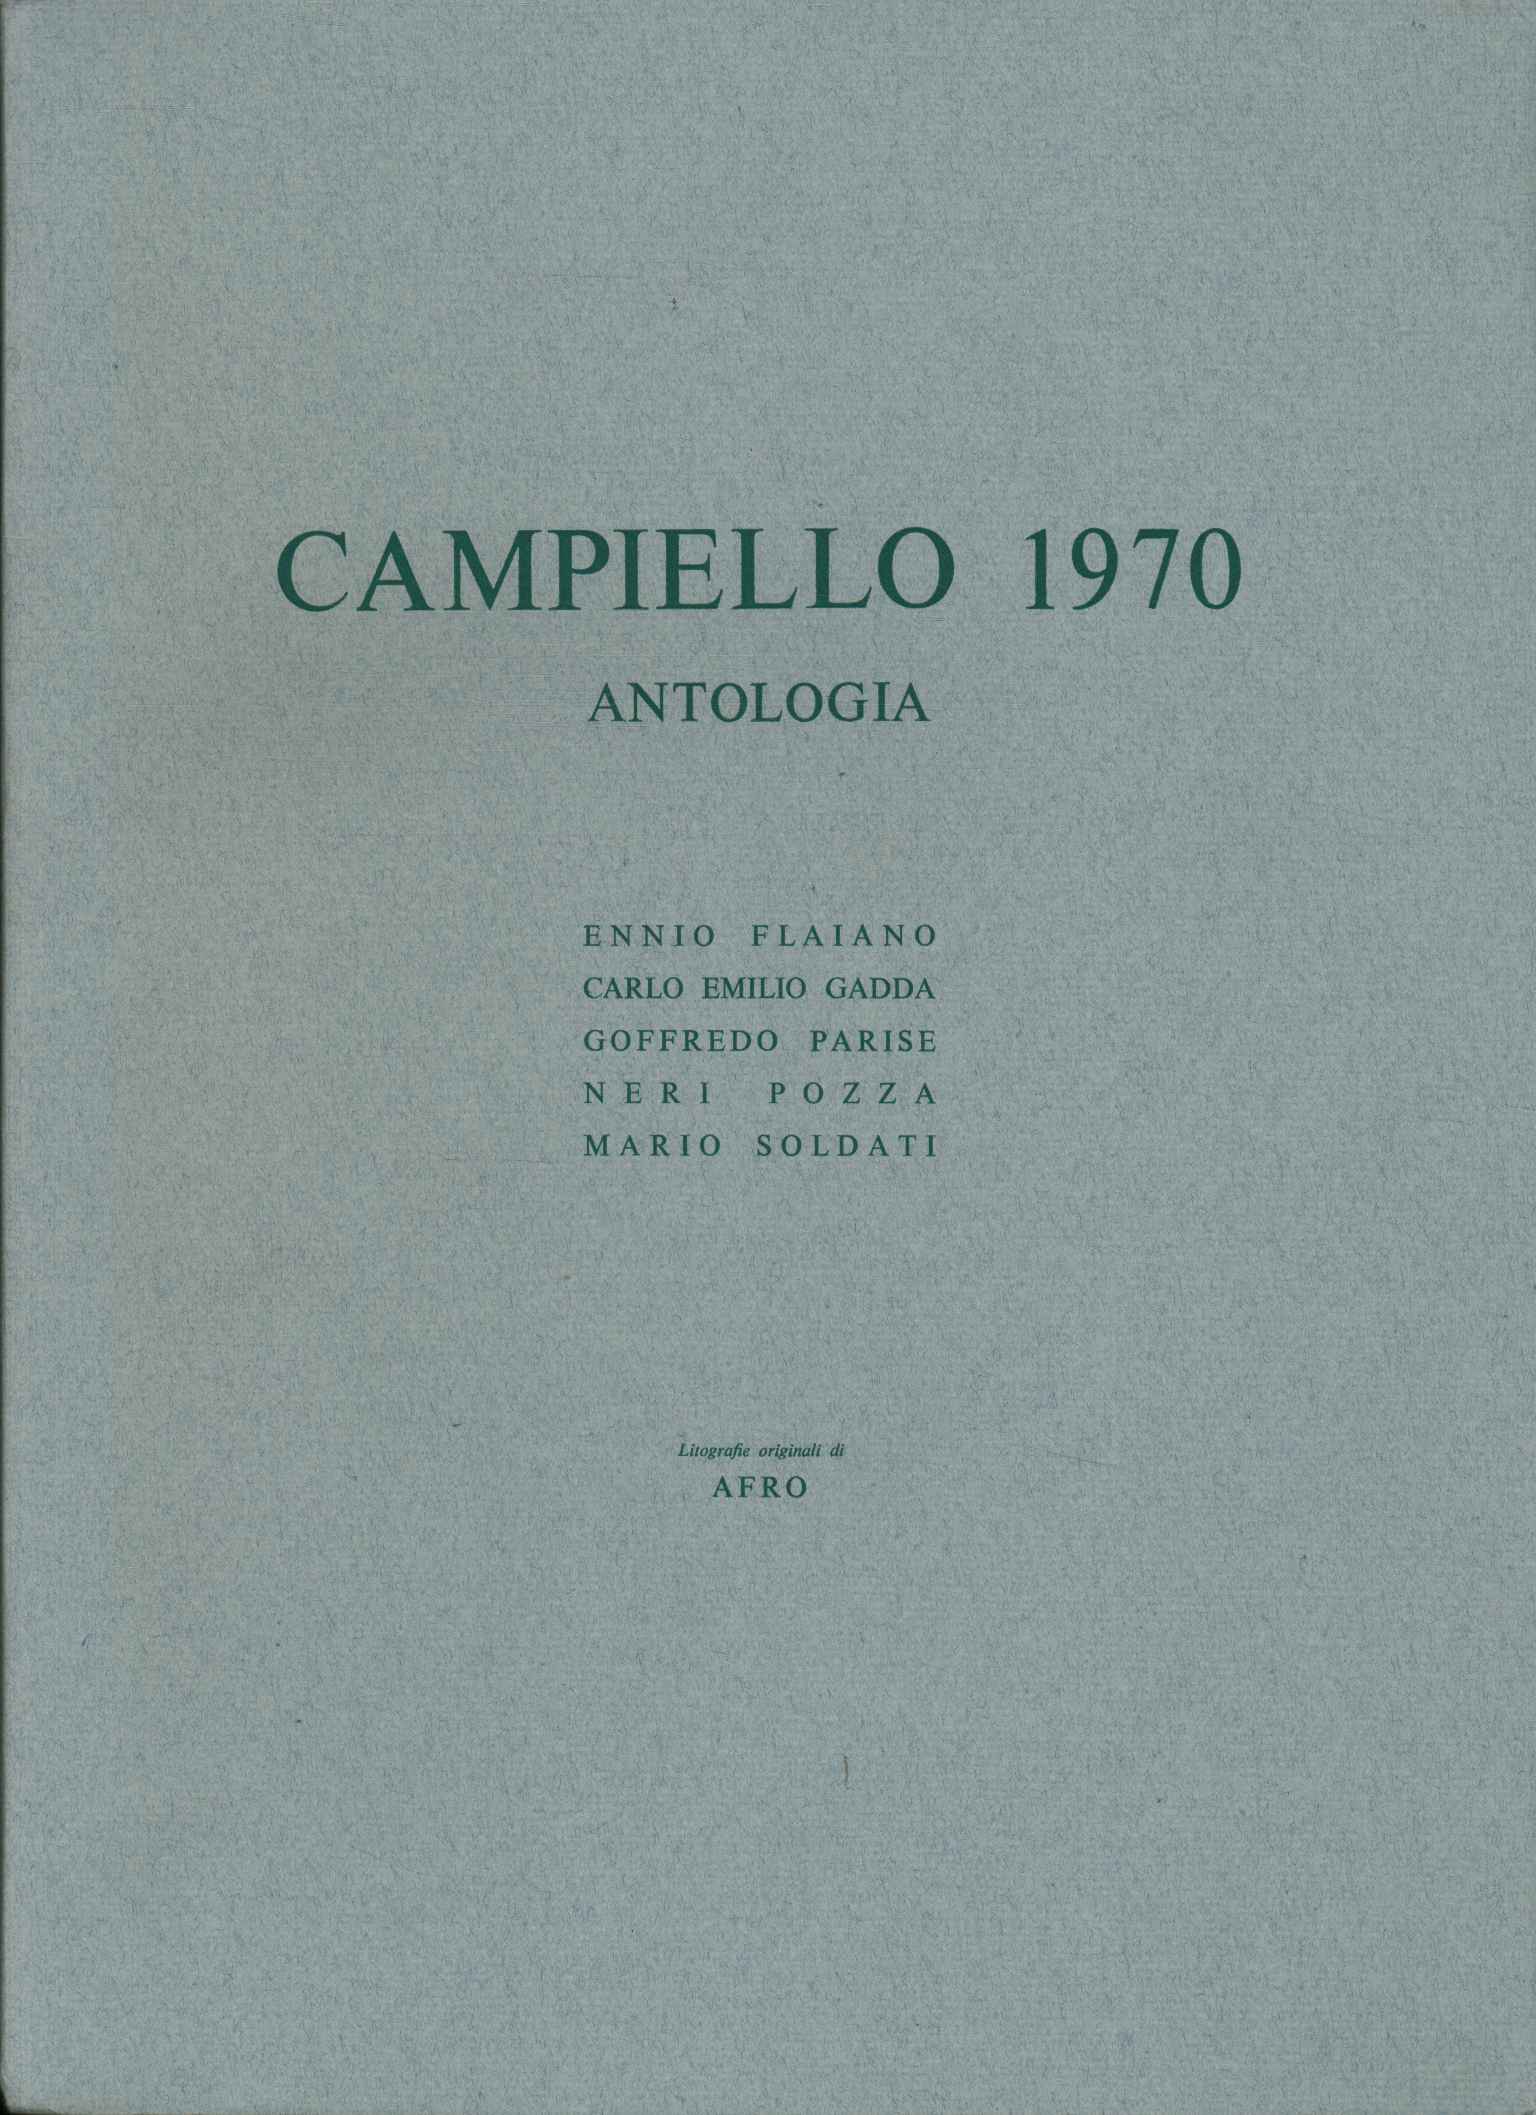 Antologia del Campiello 1970